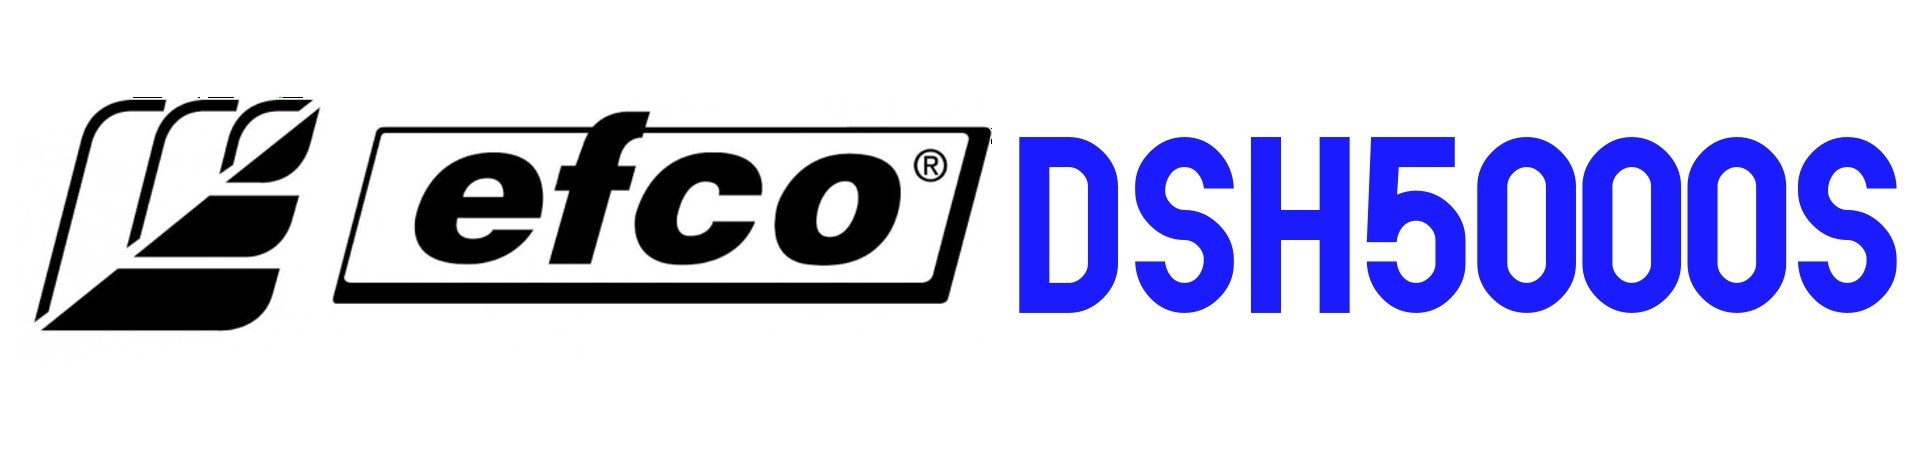 RECAMBIOS Desbrozadora Efco DSH5000S al Mejor PRECIO